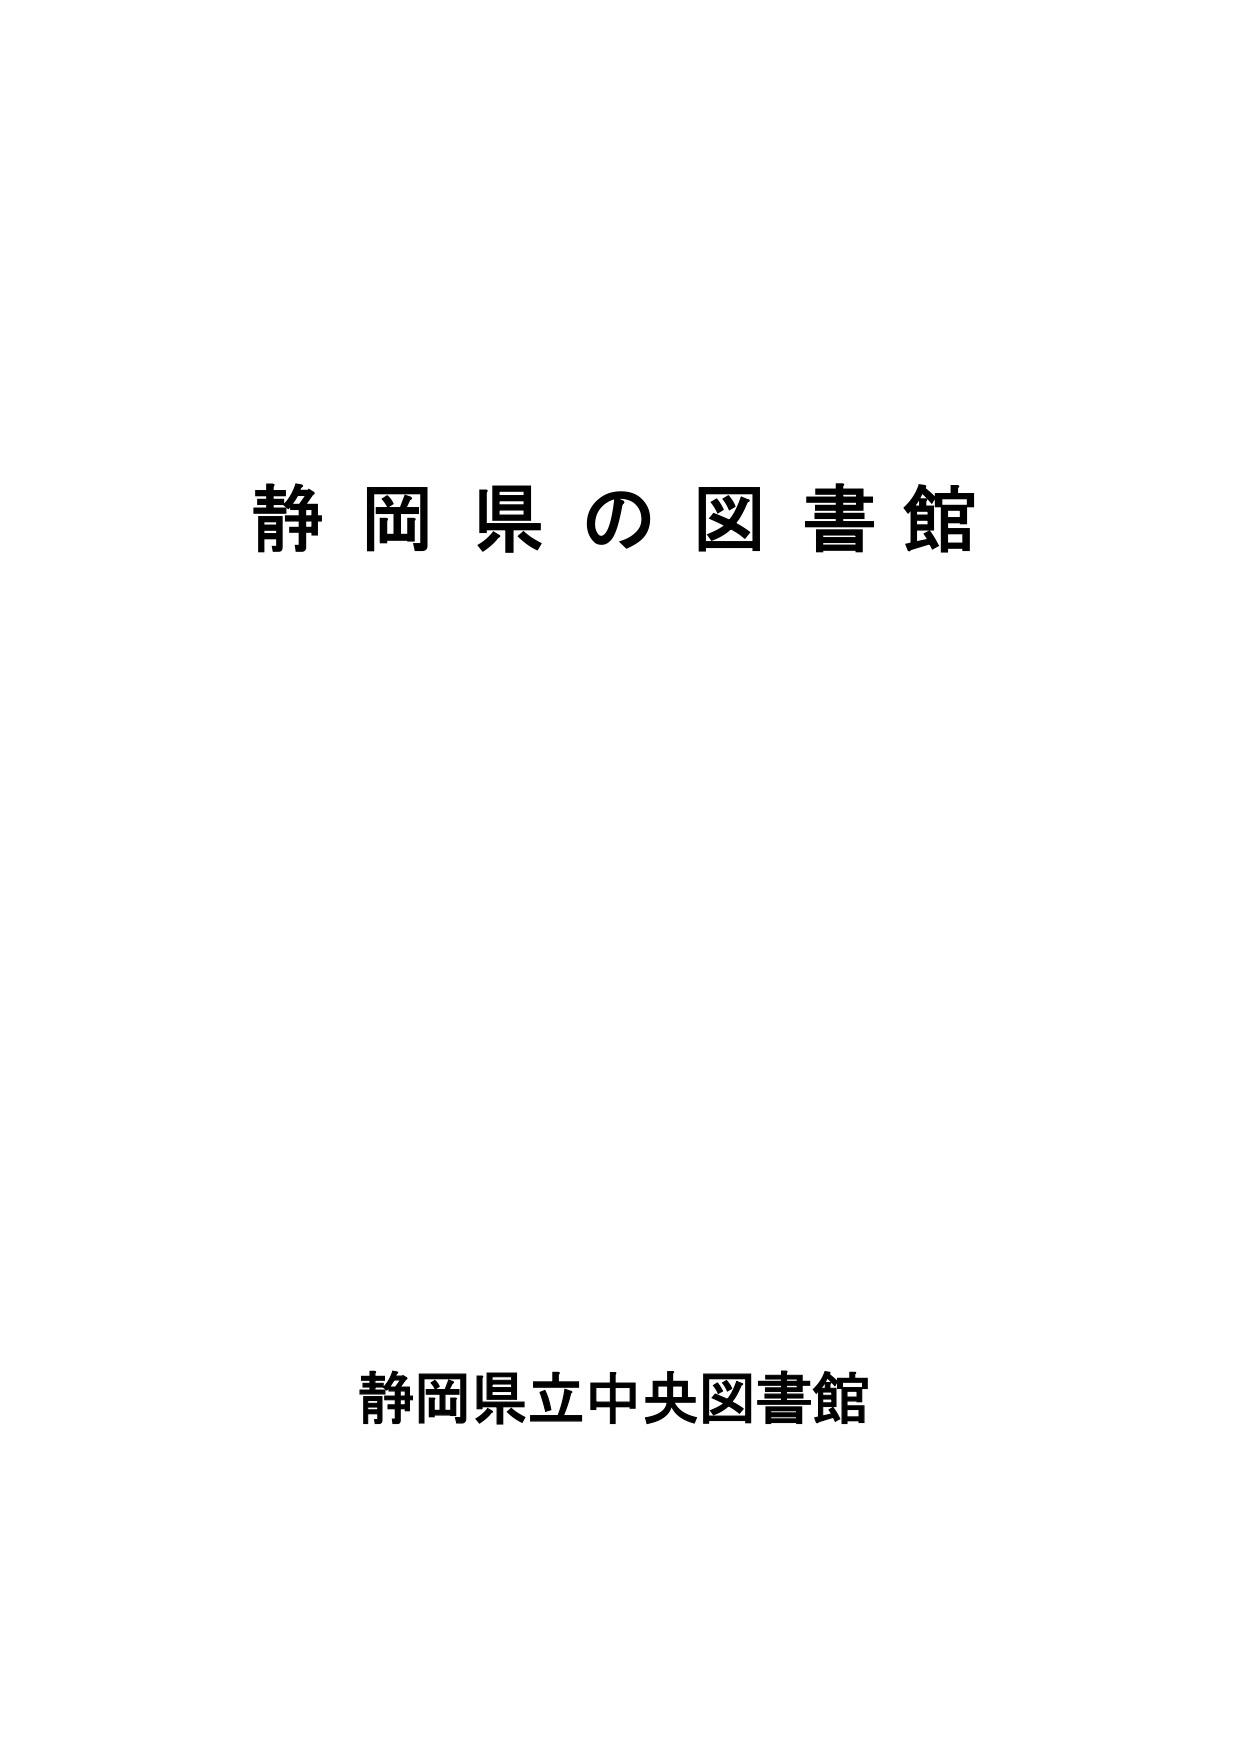 静岡県の図書館表紙